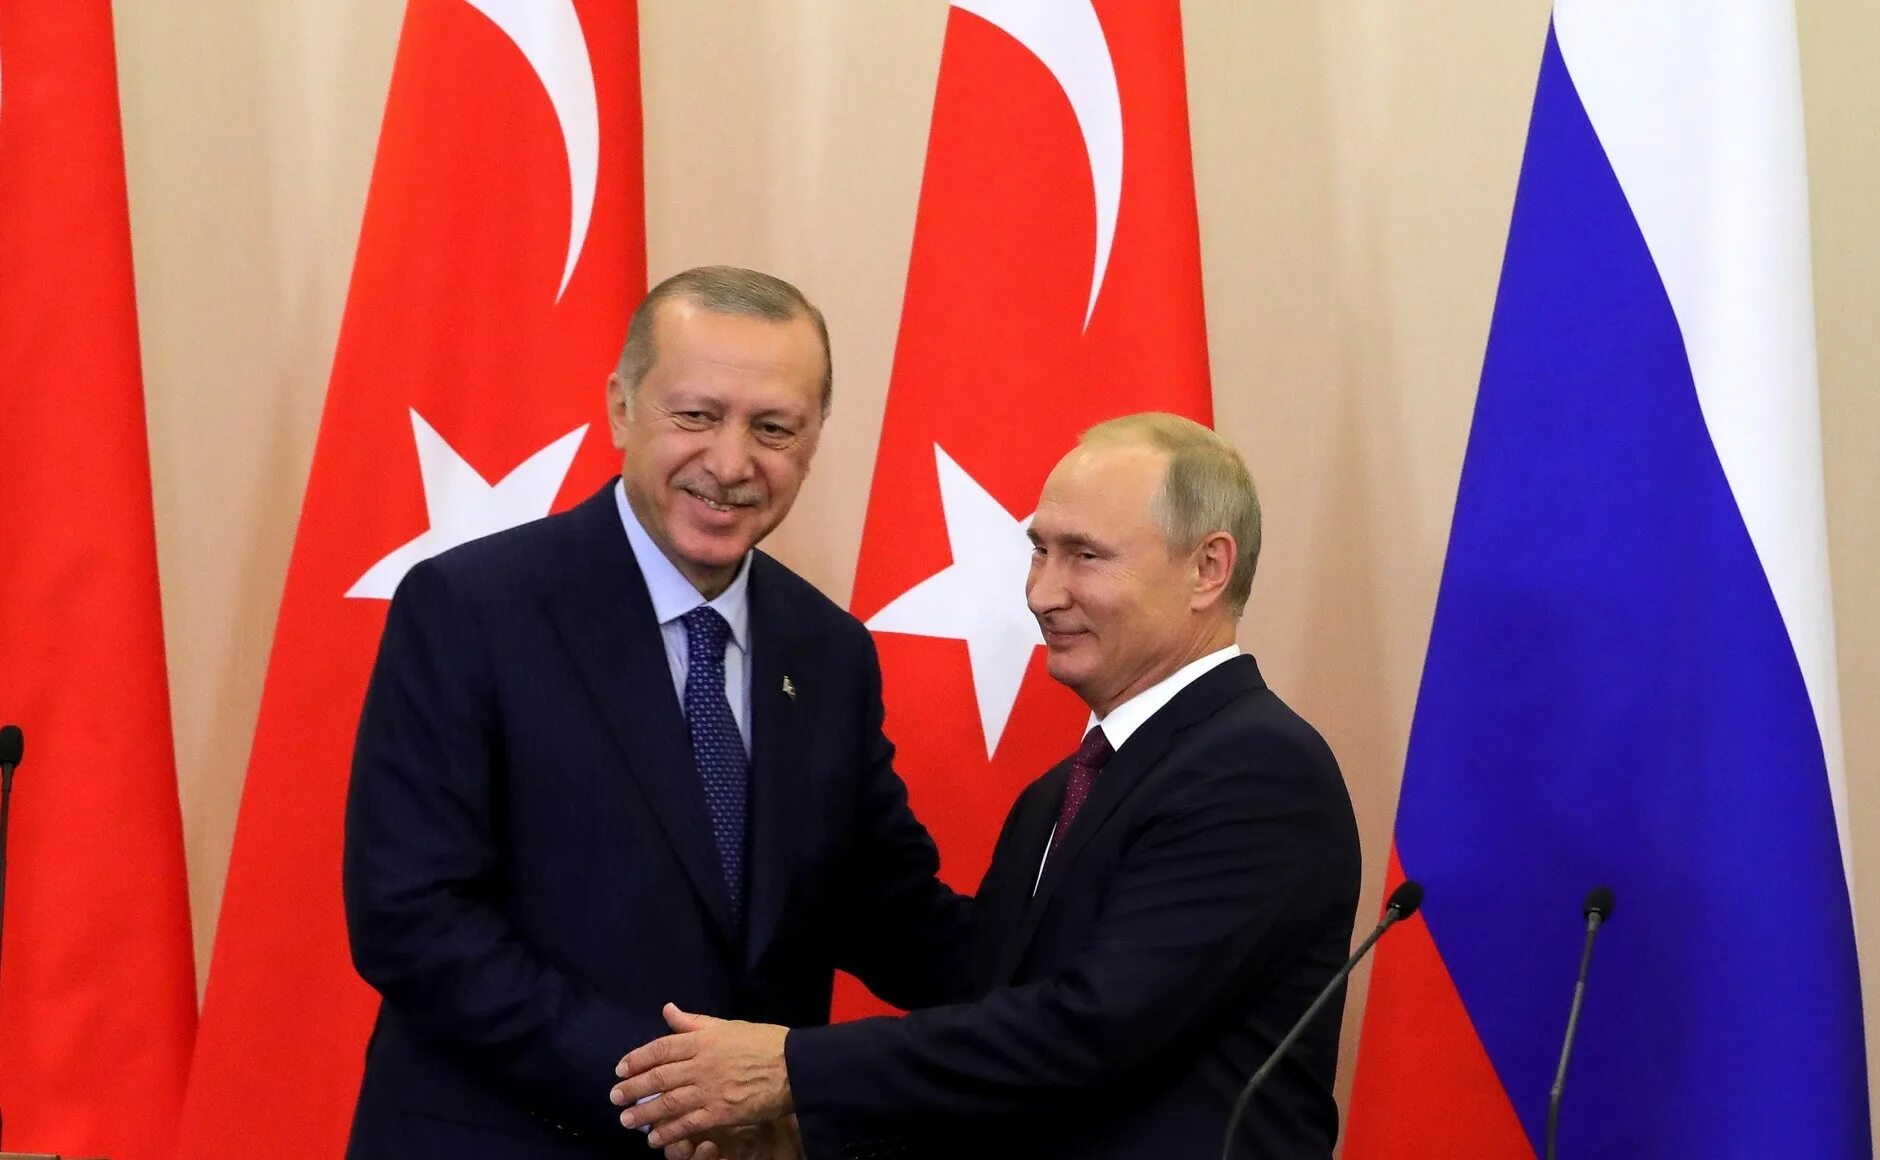 Реджеп Тайип Эрдоган фото с Путиным. Сотрудничество России и Турции. Турция россия связи